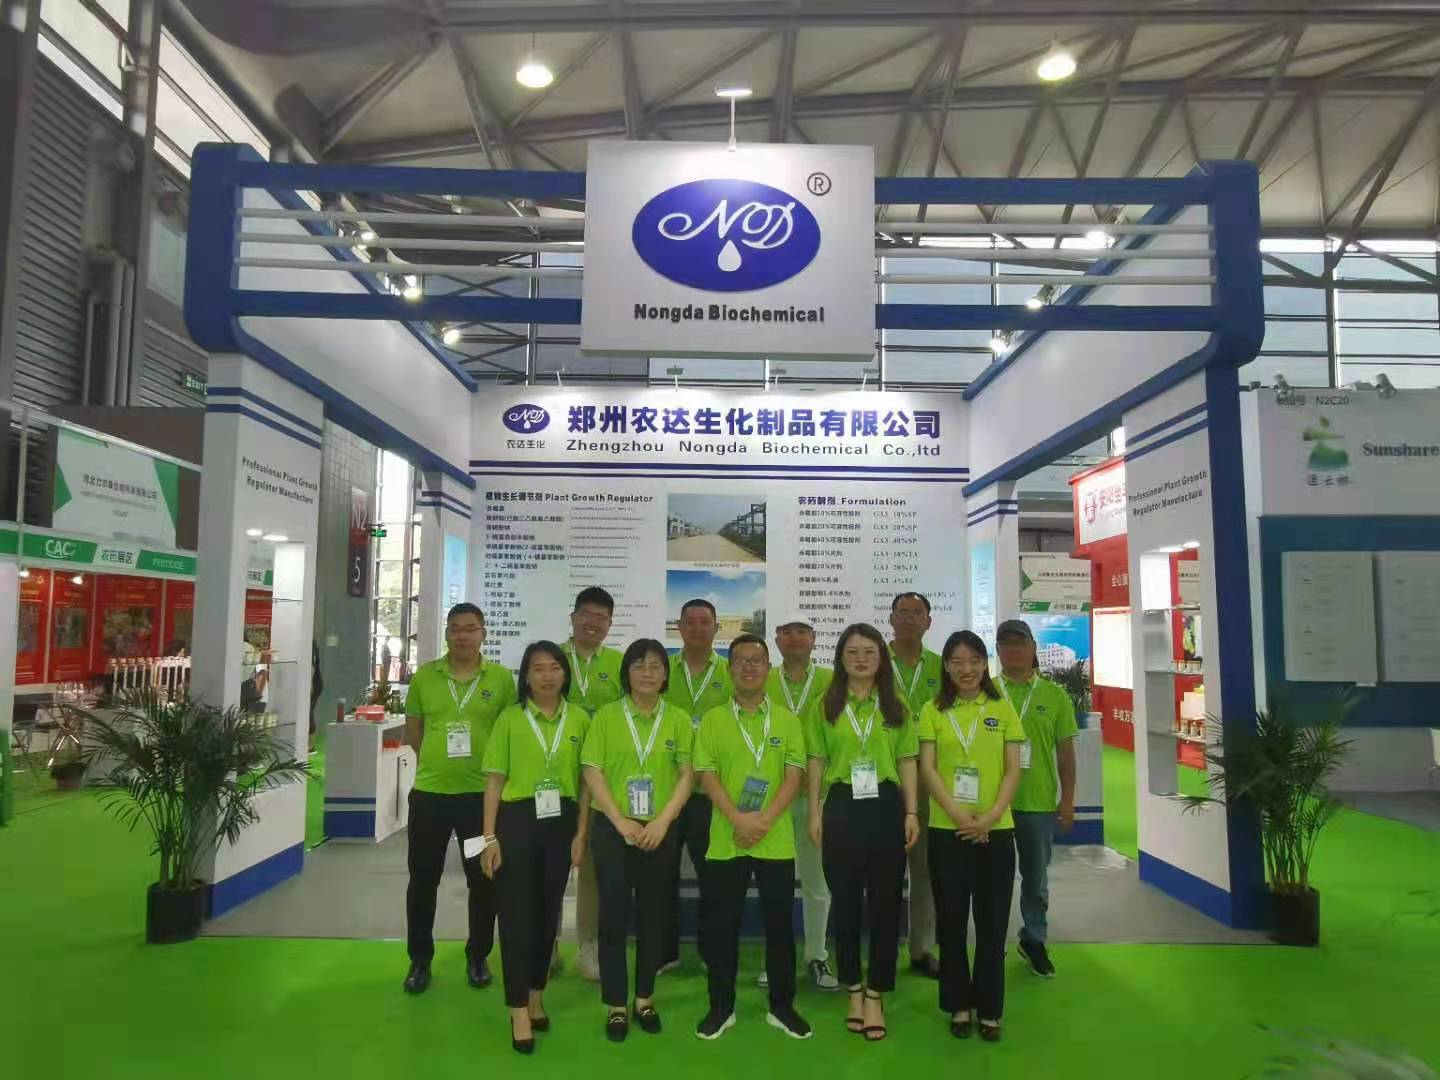 郑州宝马1211娱乐网站盛装出席 第二十二届中国国际农用化学品及植保展览会(图1)